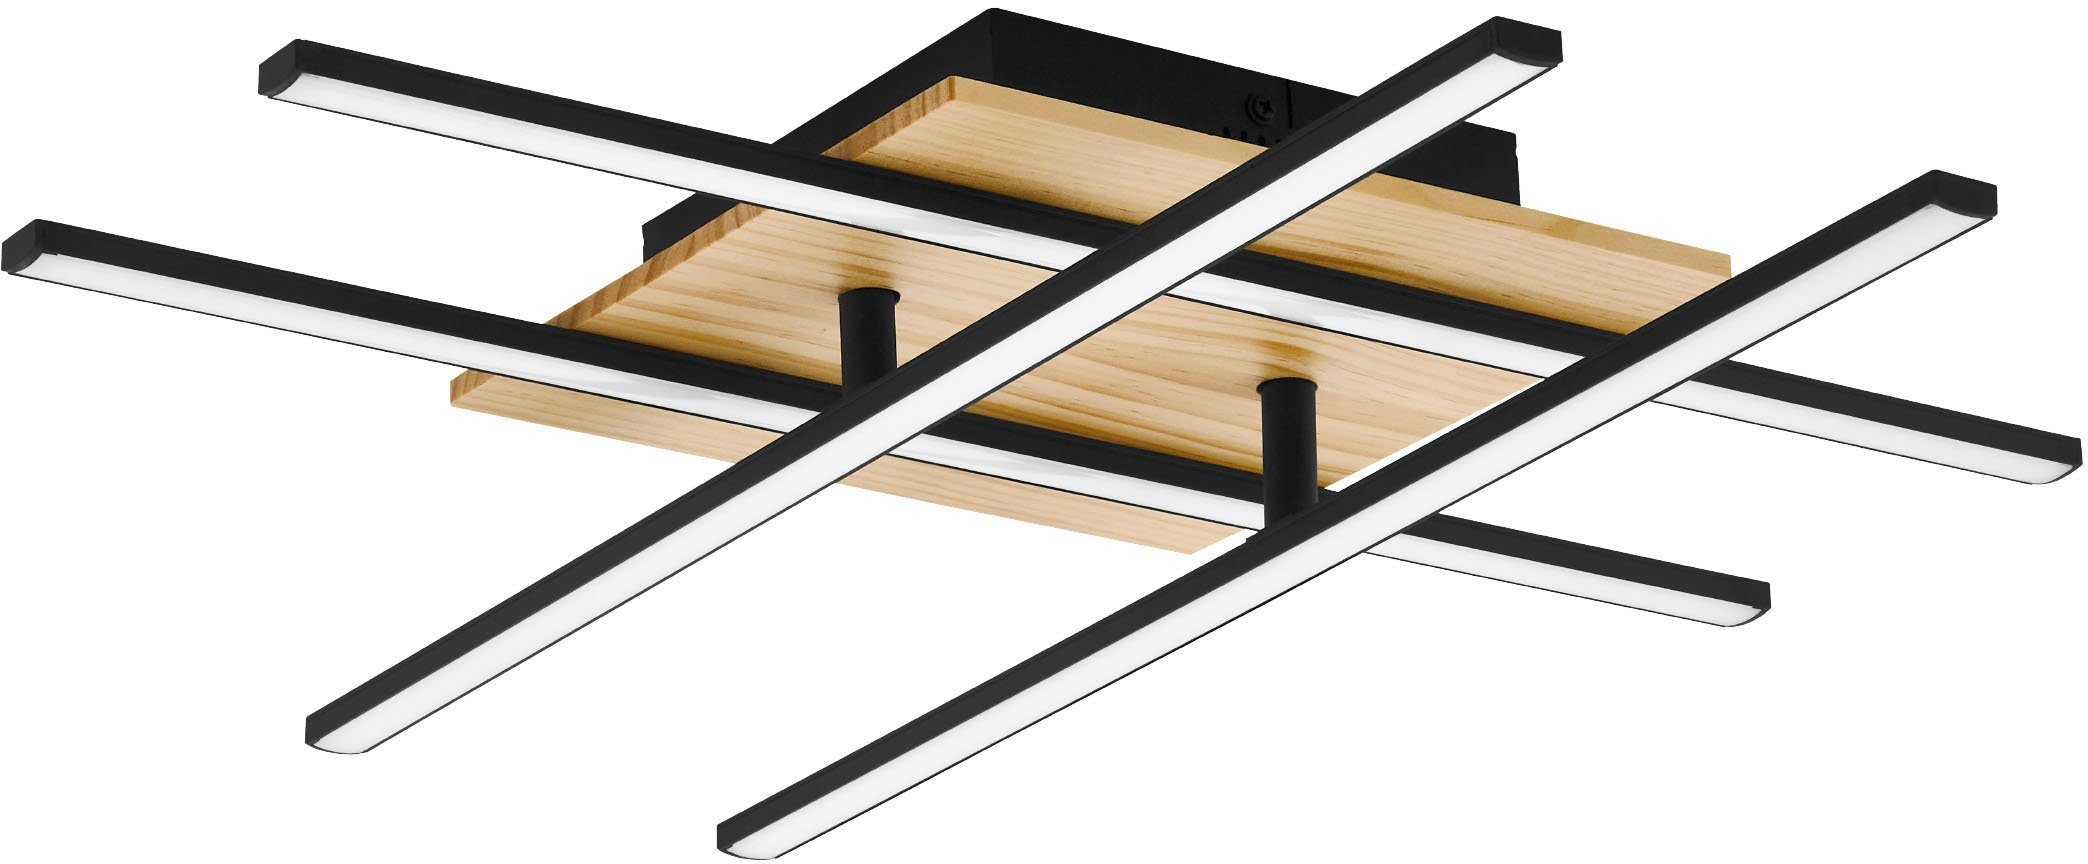 EGLO Deckenleuchte MARINELLO 1, LED fest integriert, Warmweiß, Deckenleuchte in schwarz und braun aus Alu, Stahl, Holz | Deckenlampen